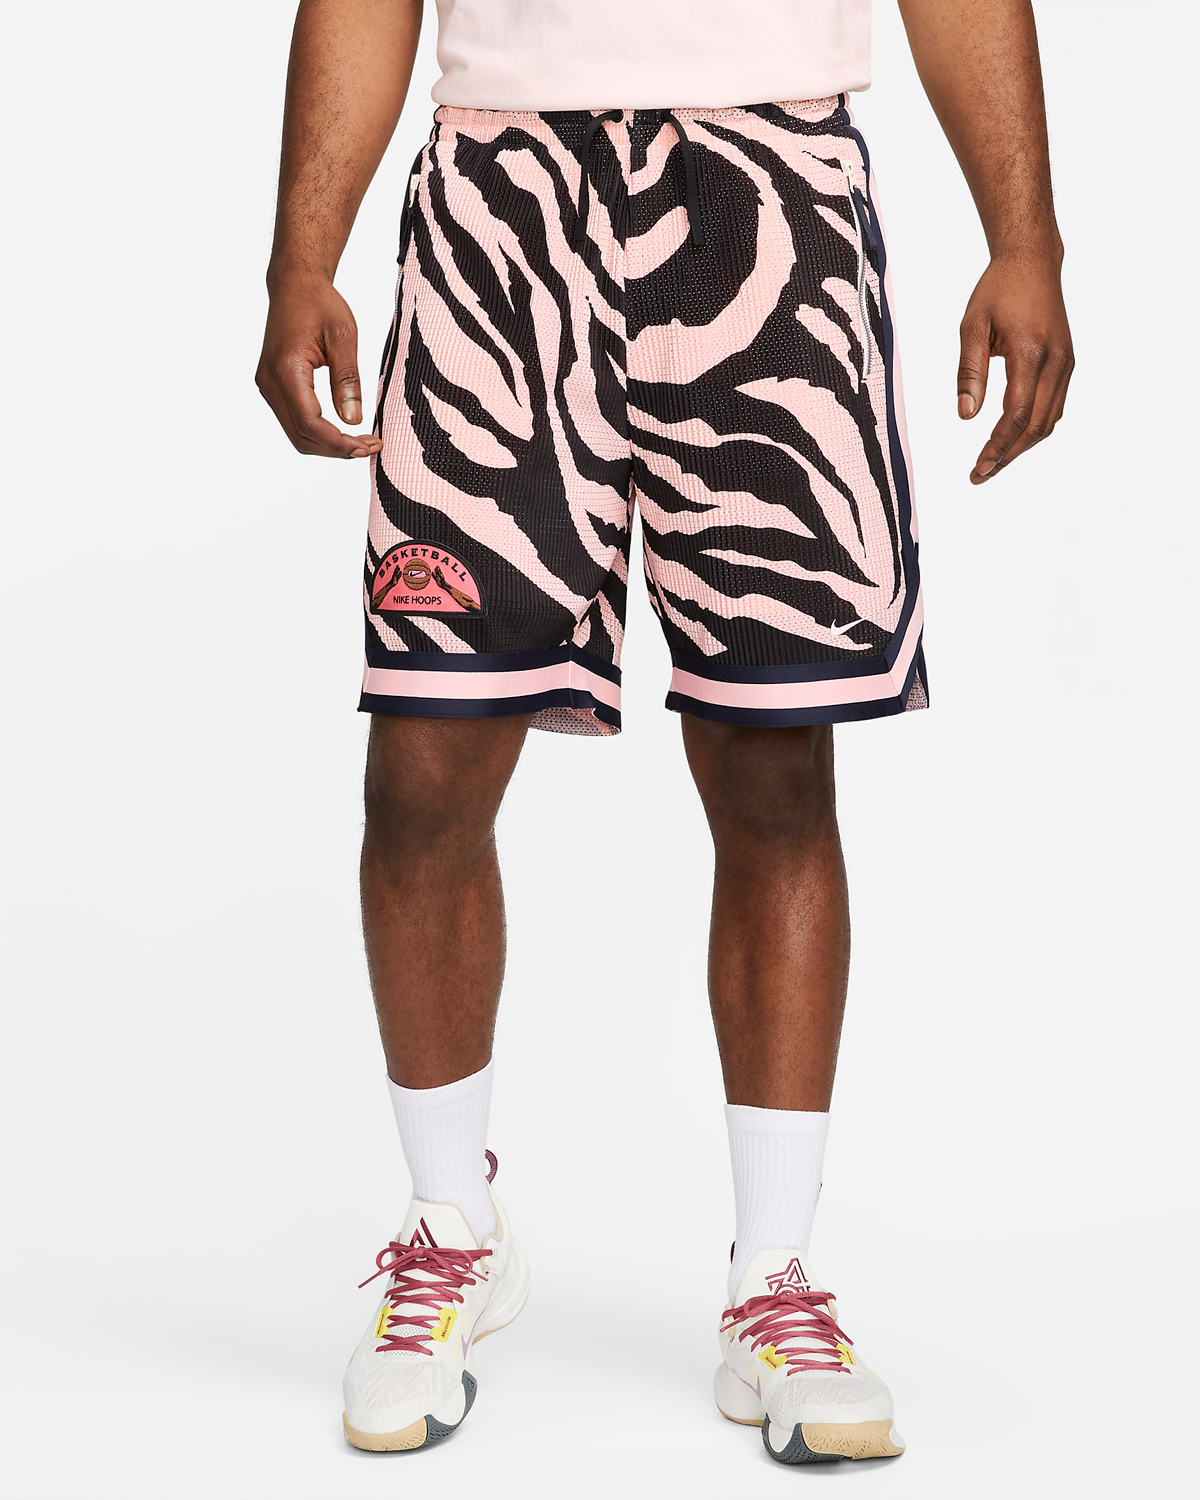 Nike-Premium-Basketball-Shorts-Pink-Bloom